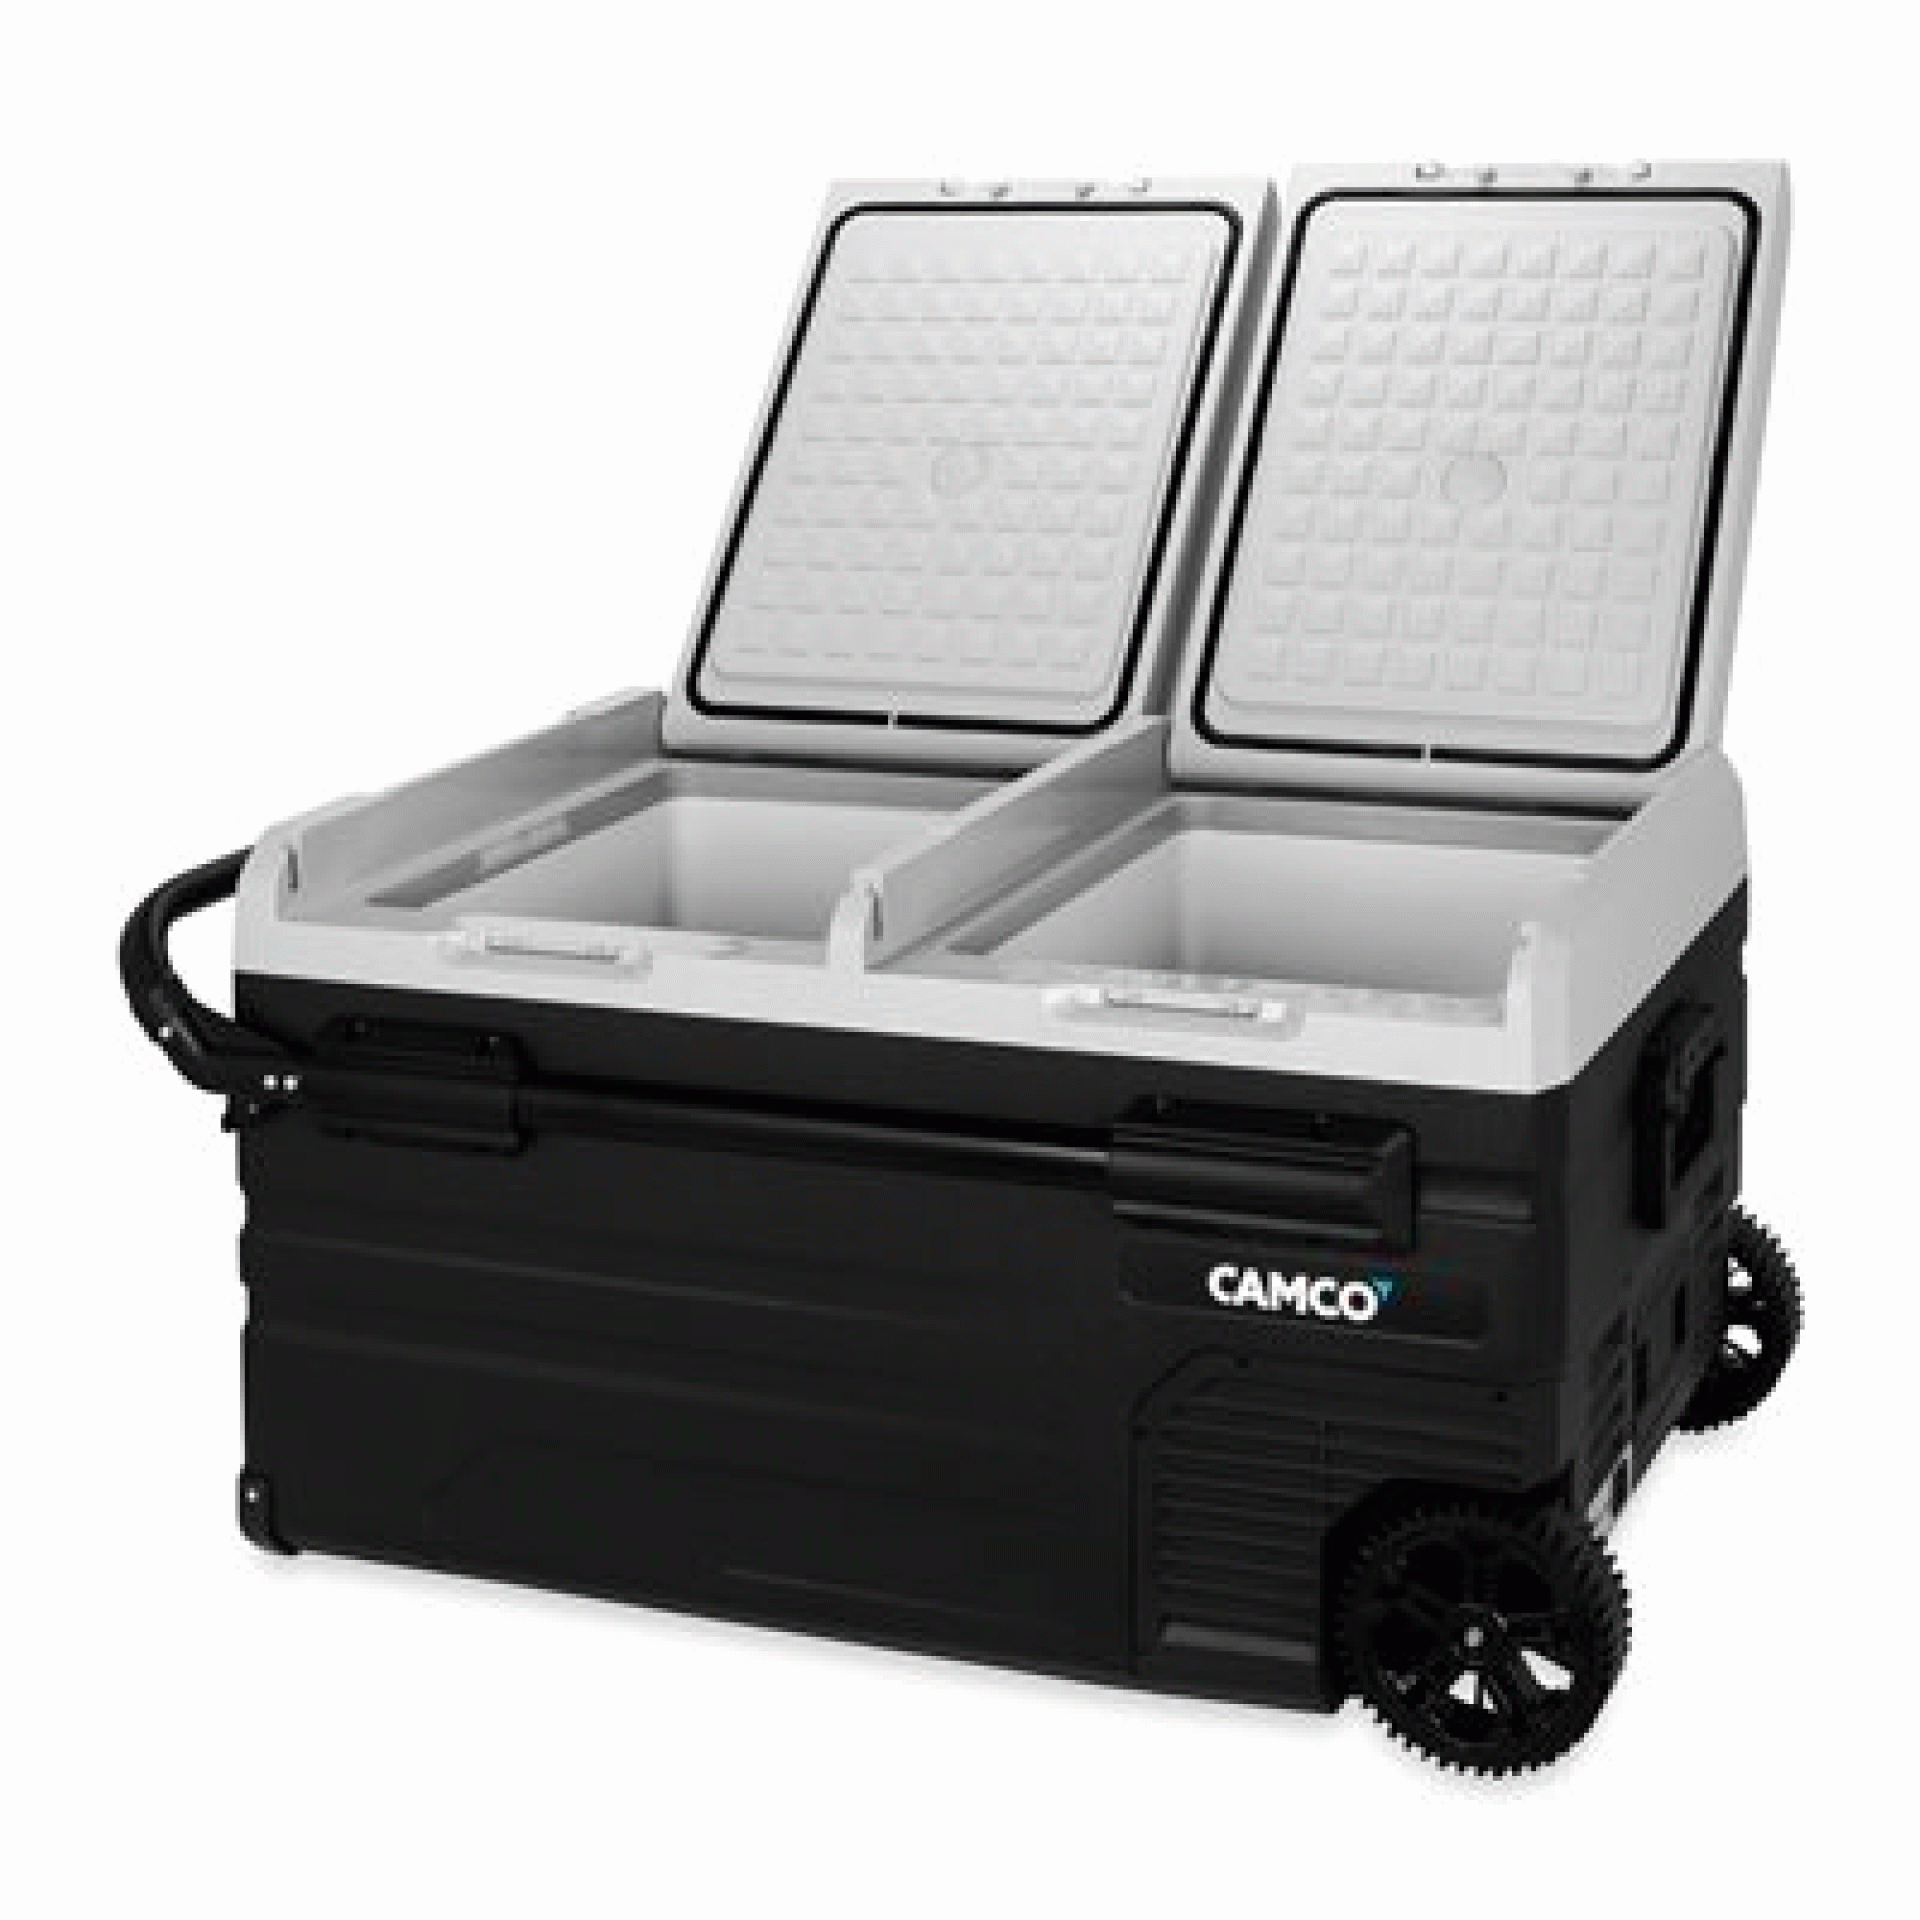 CAMCO MFG INC | 51520 | Portable Refrigerator - 75L 12V/110V